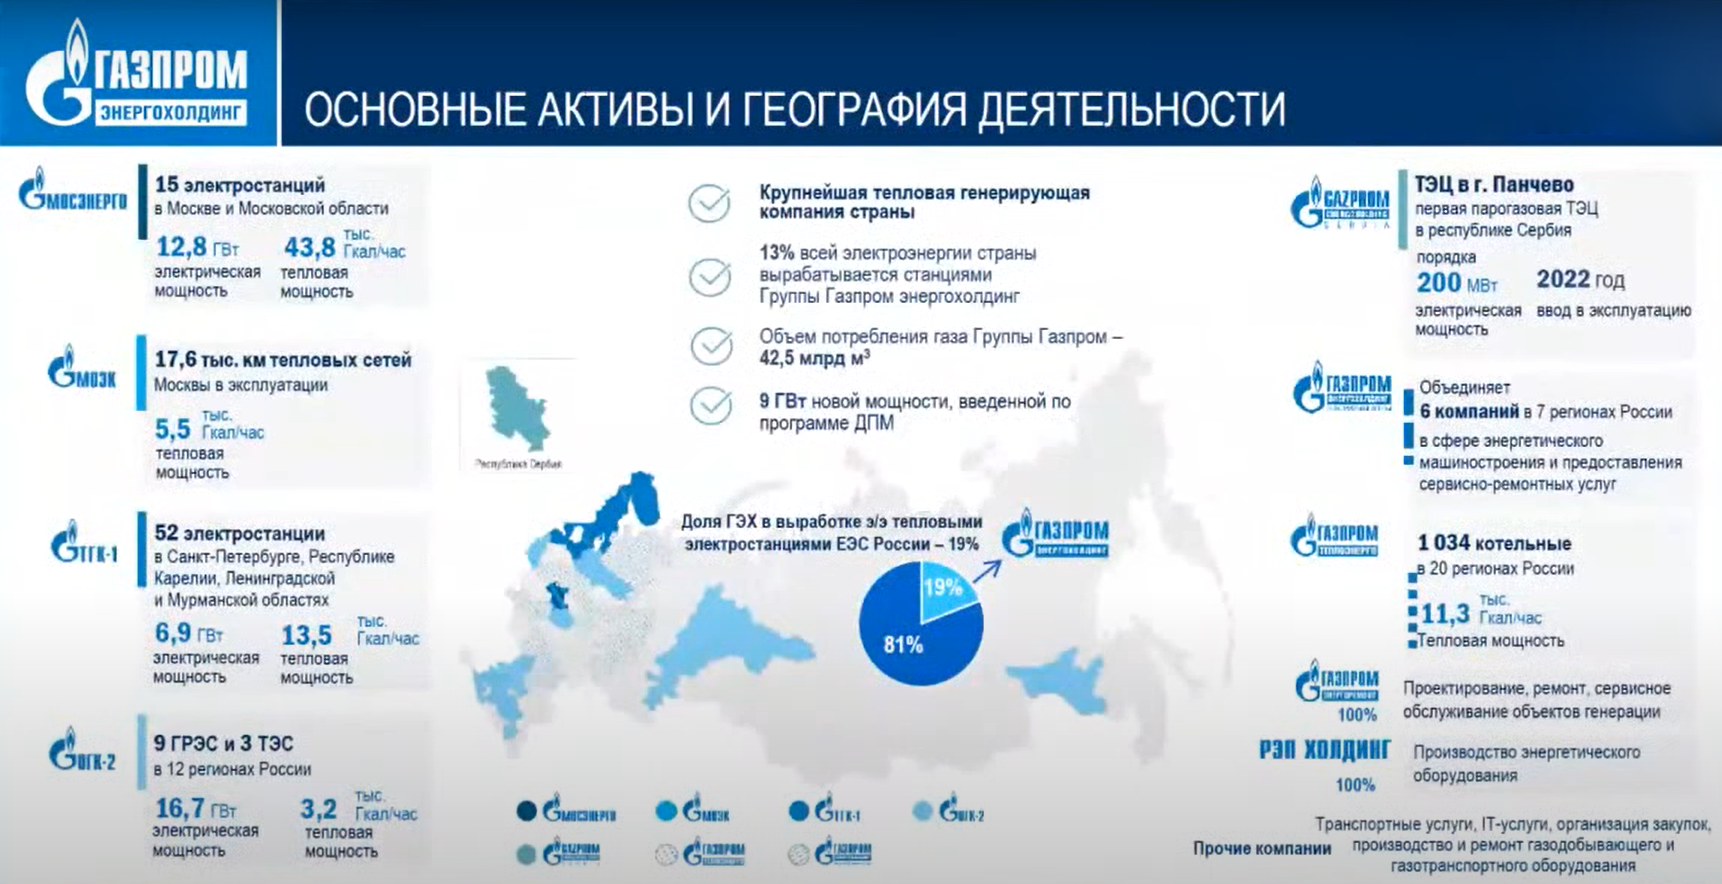 Основные активы и география деятельности Газпром энергохолдинг